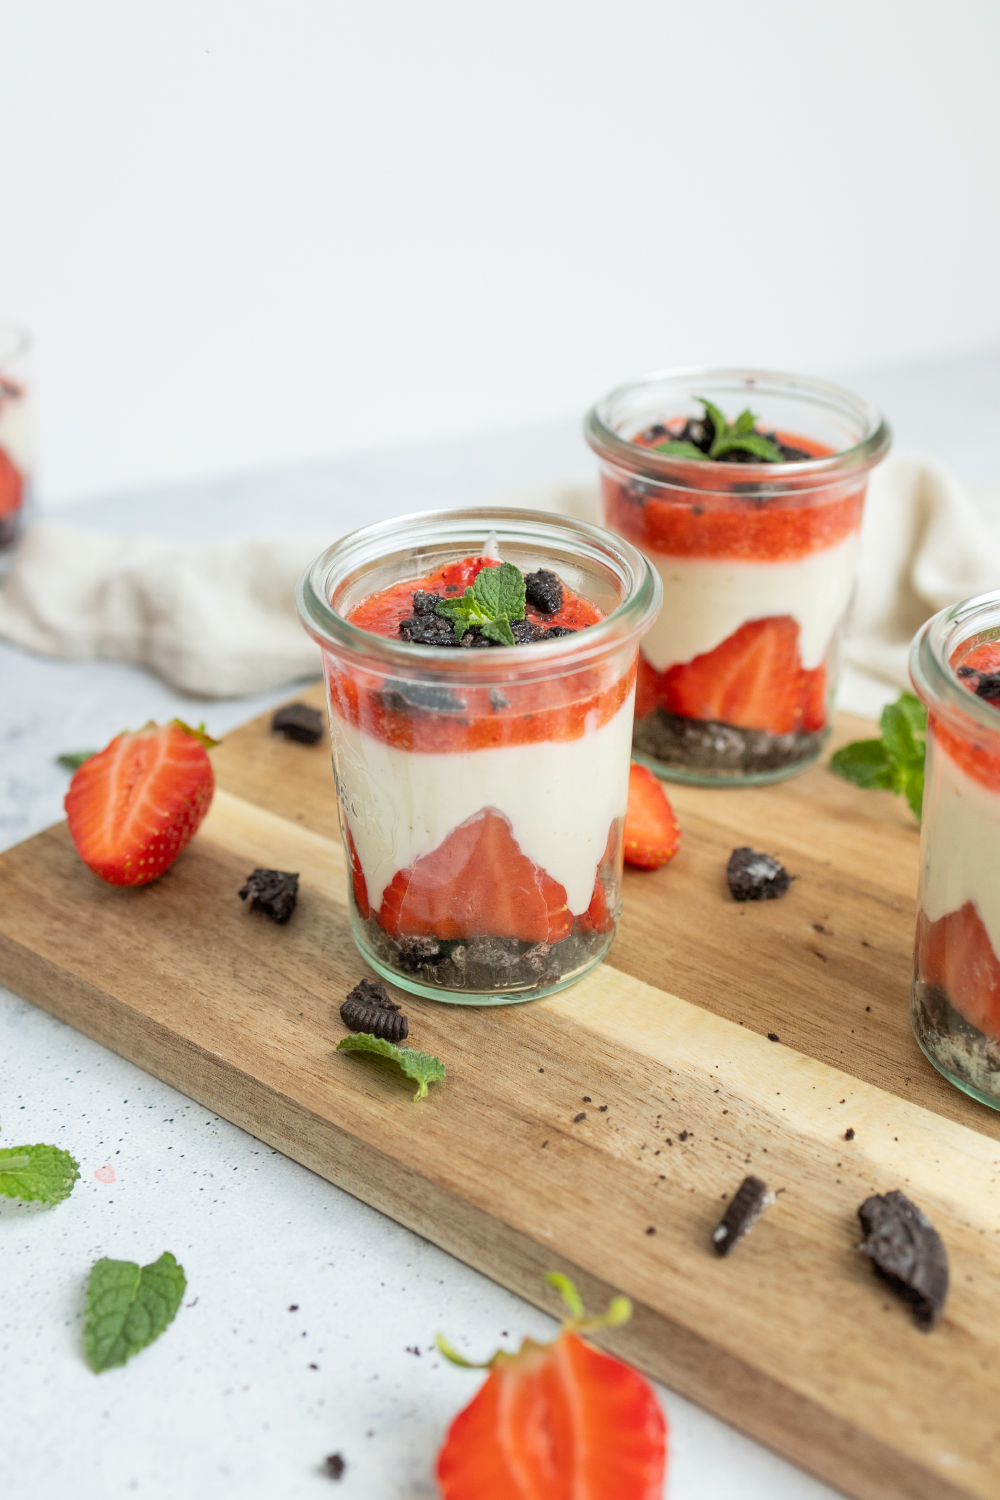 OREO-Erdbeer-Schichtdessert mit Joghurt